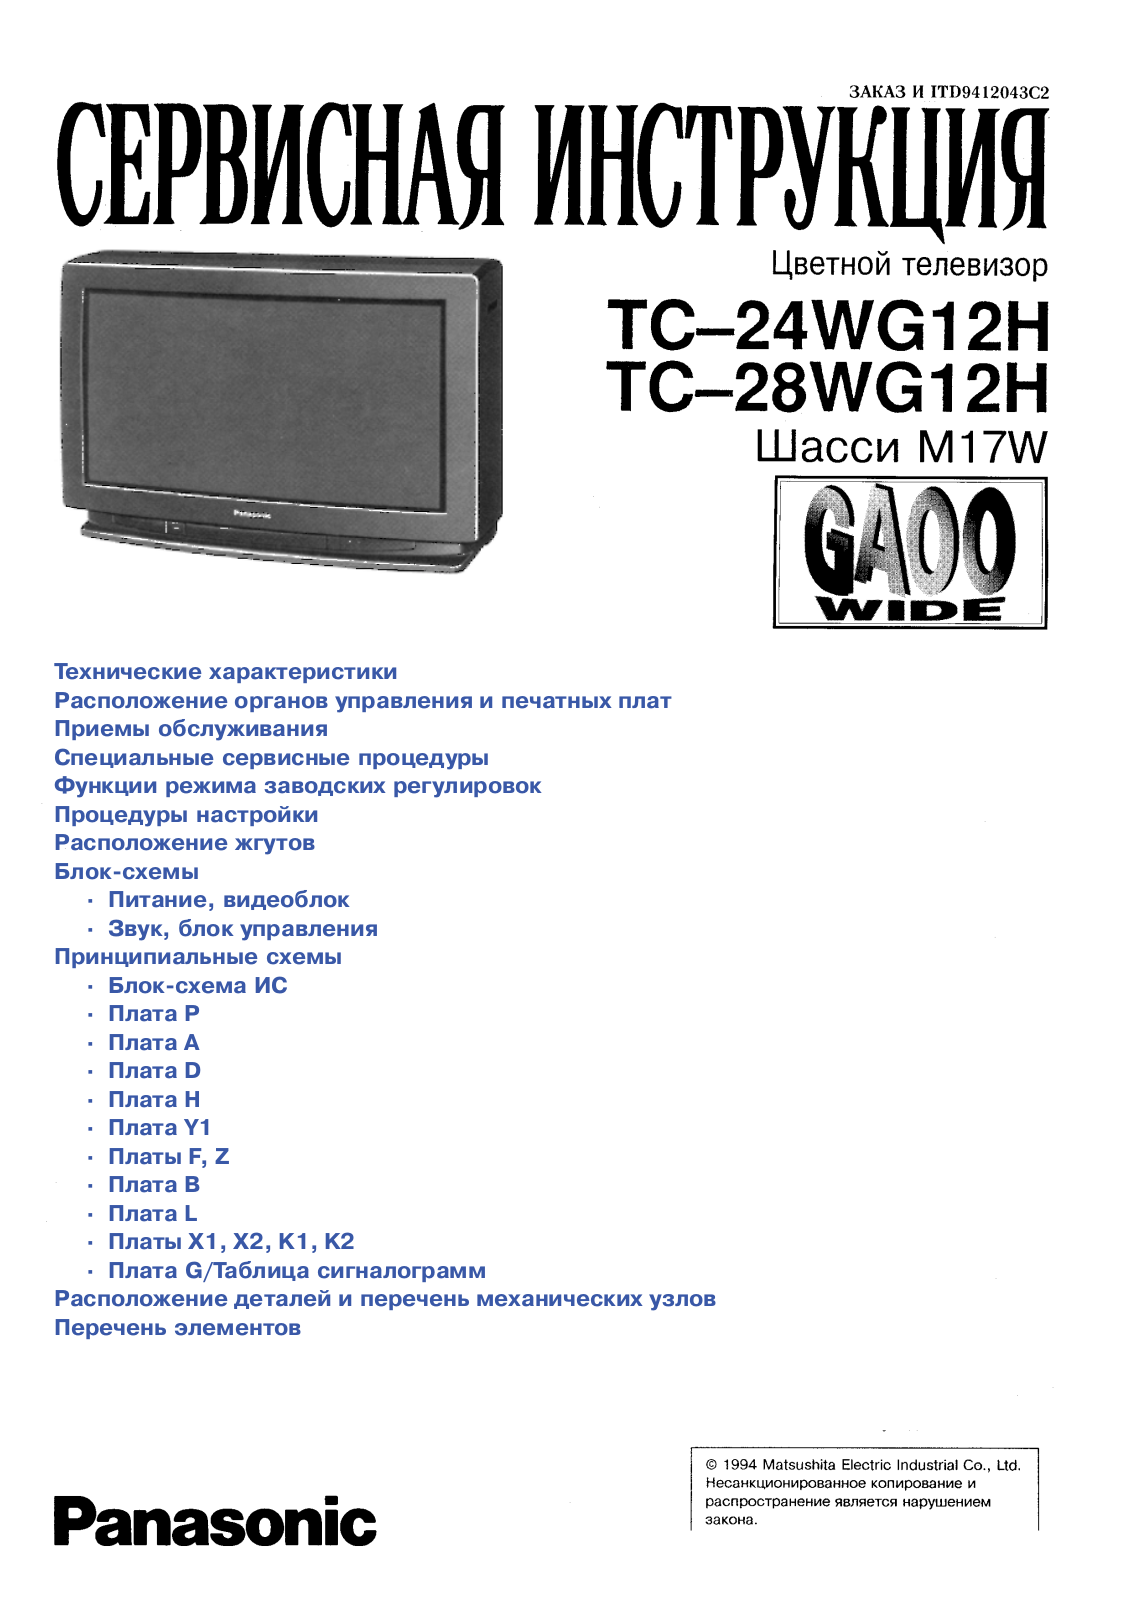 Panasonic TC-24WG12H Schematic